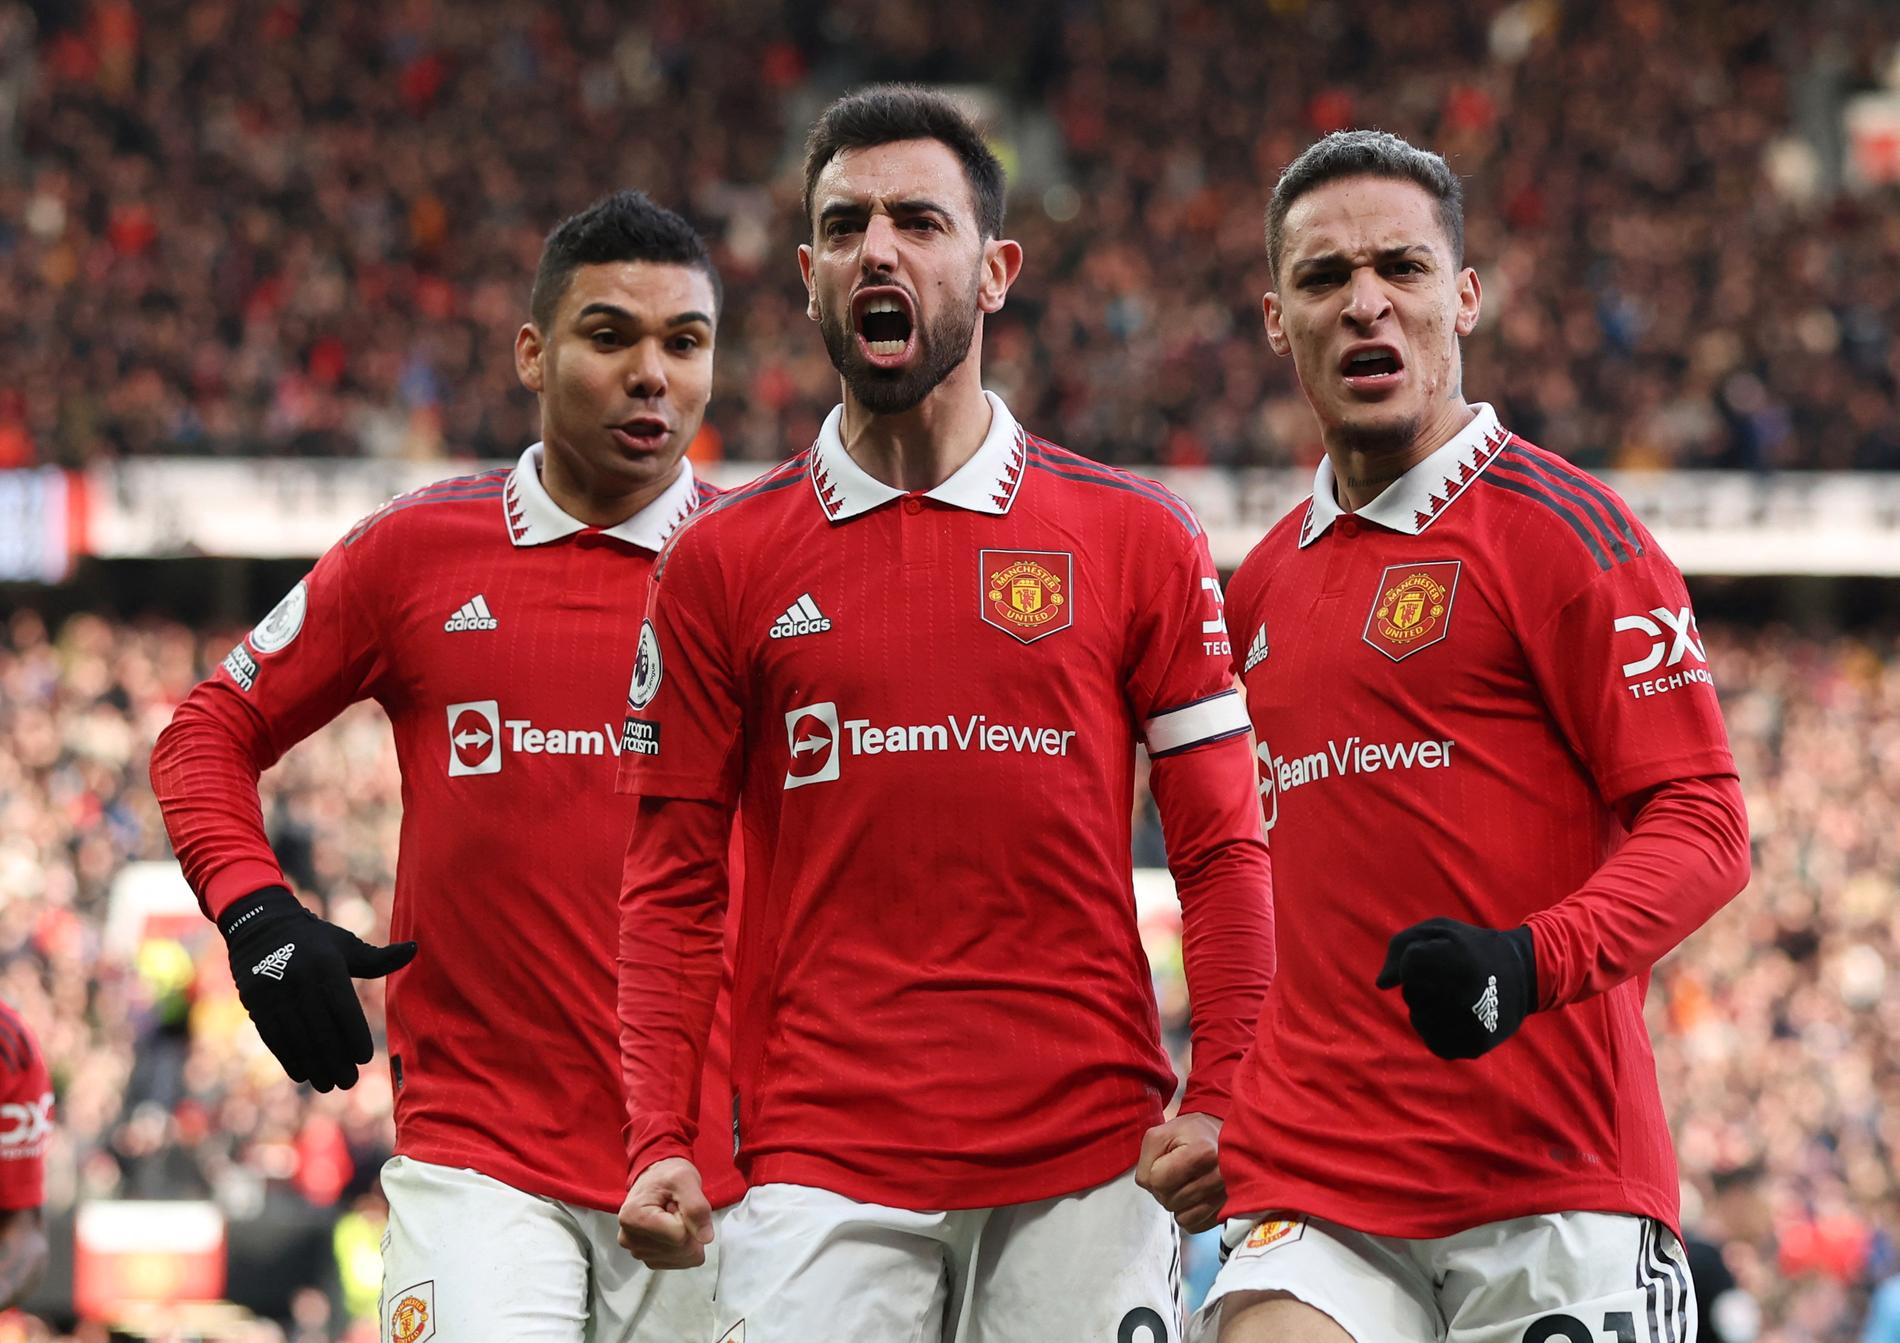 Il Manchester United ha ribaltato la partita del derby dopo aver cambiato la decisione: – Non ha avuto effetto